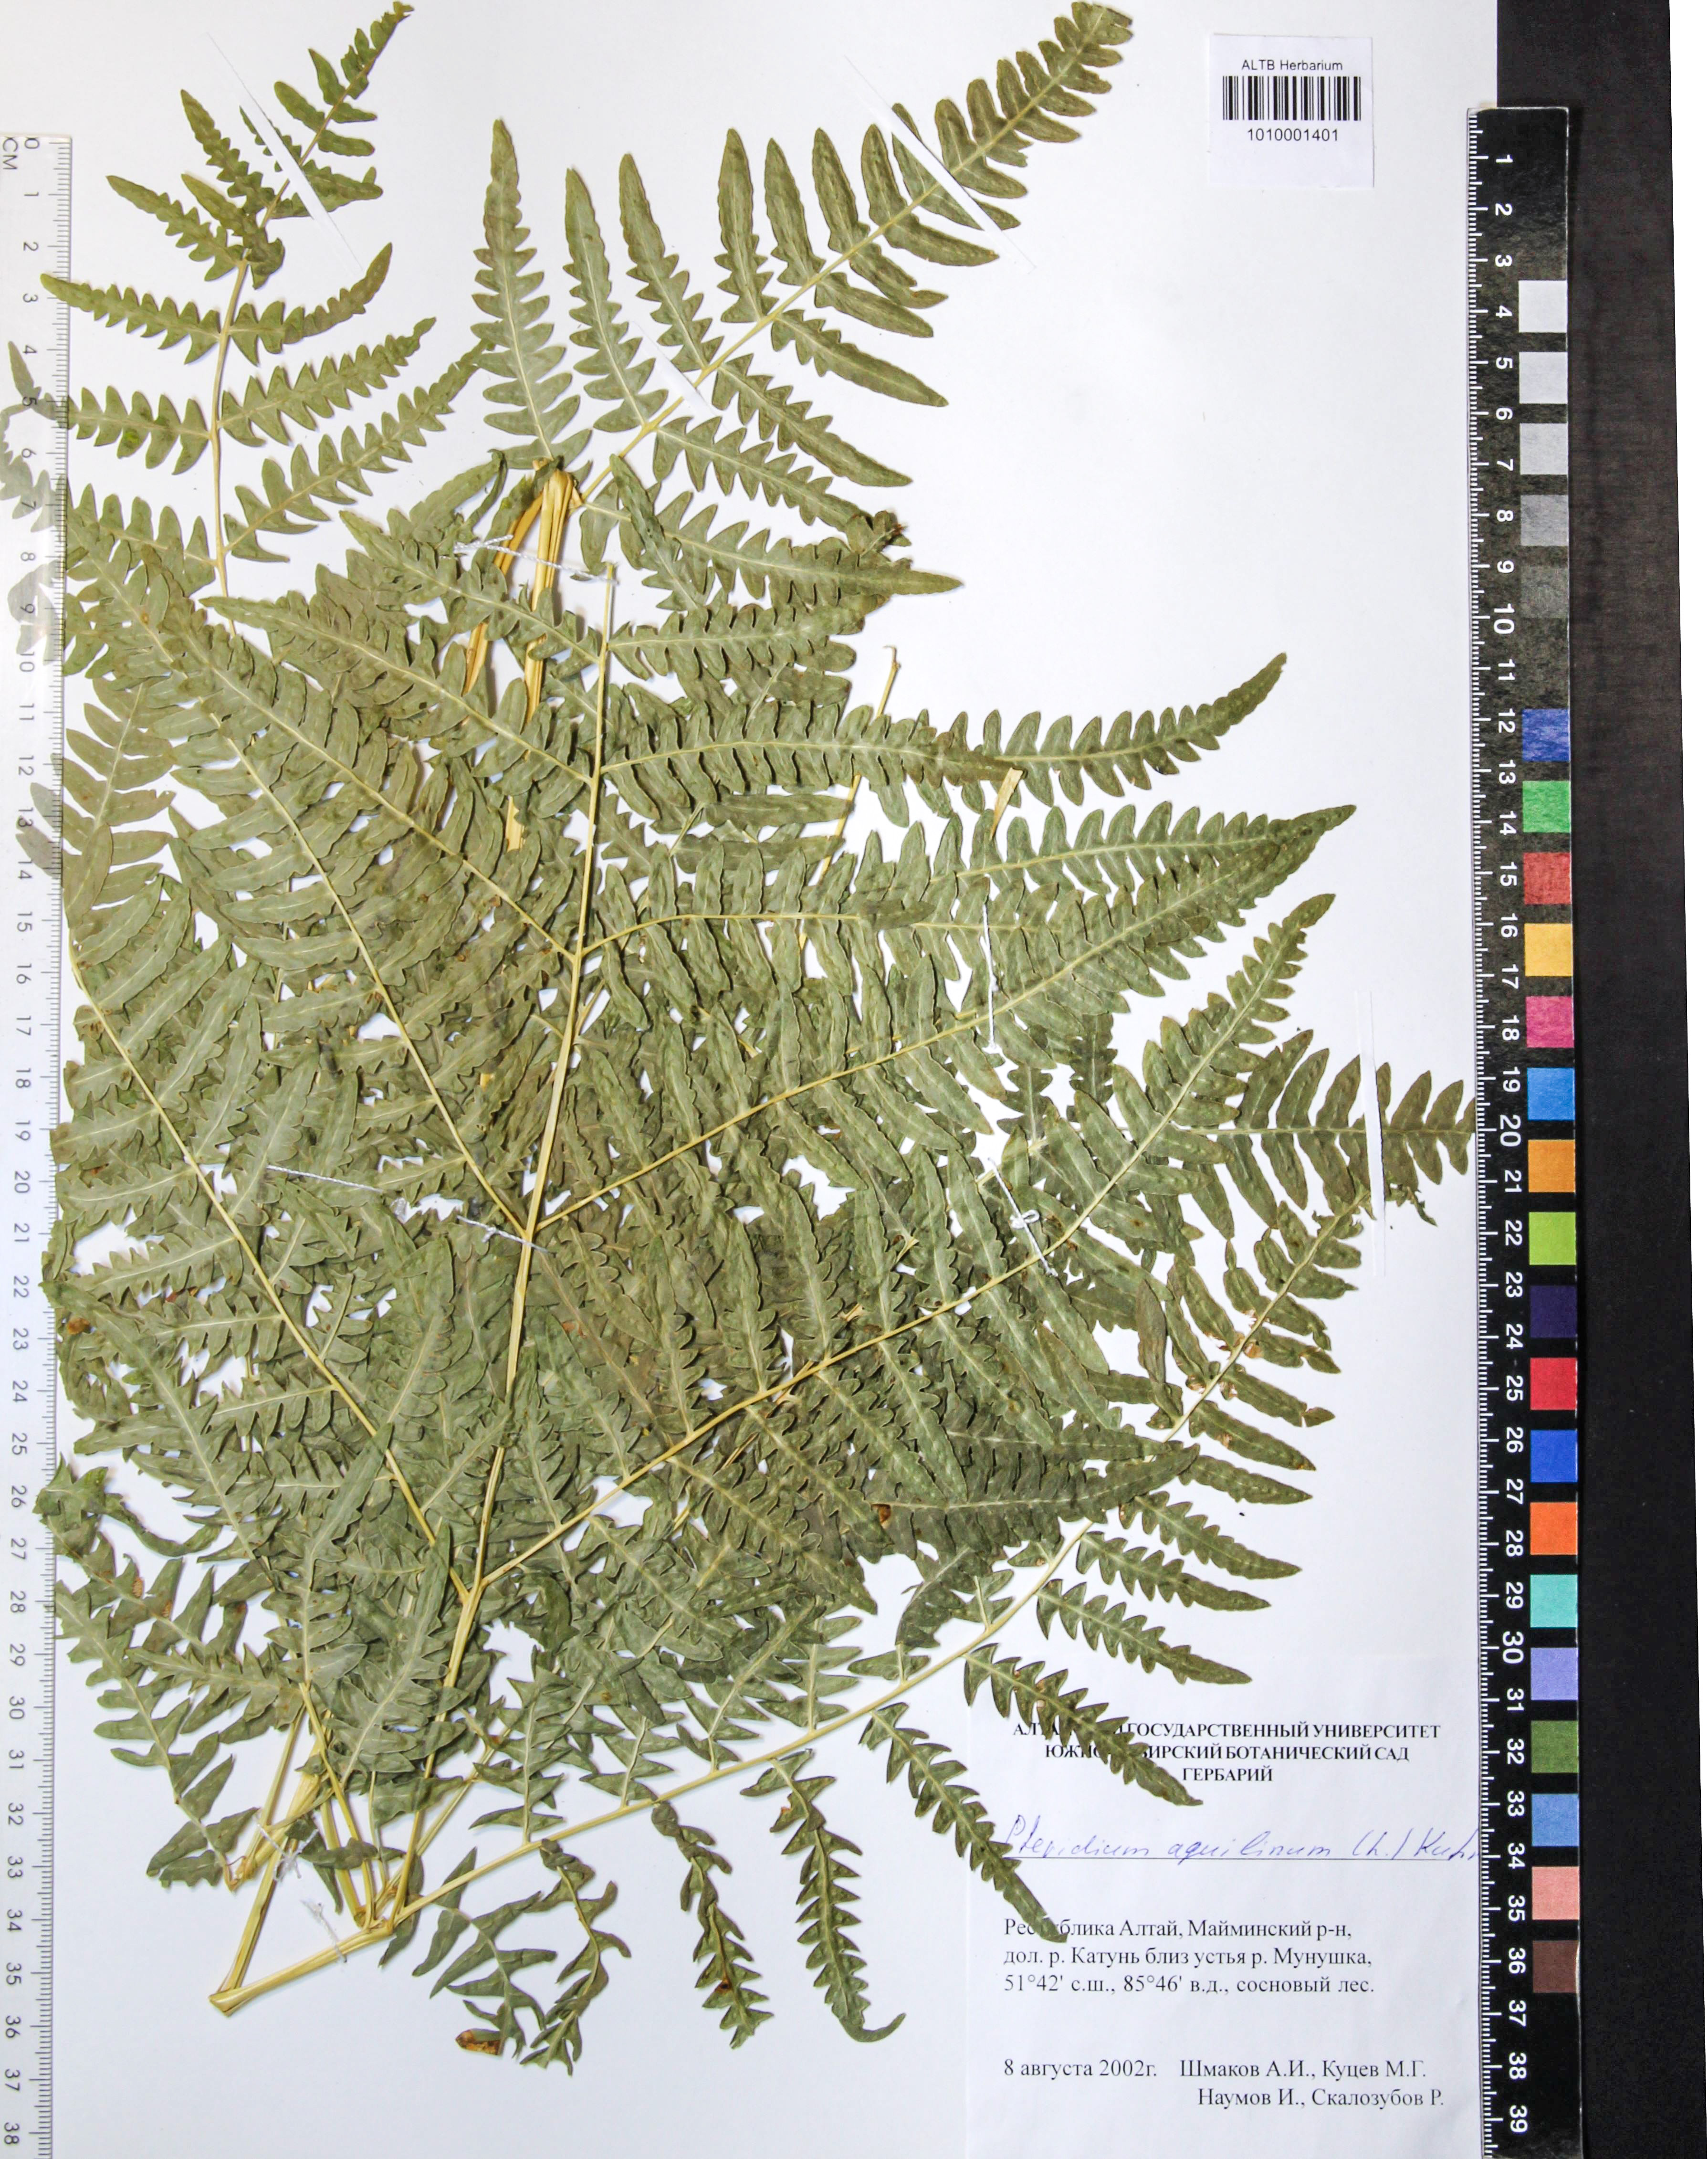 Dennstaedtiaceae,Pteridium pinetorum C.N. Page & R.R. Mill